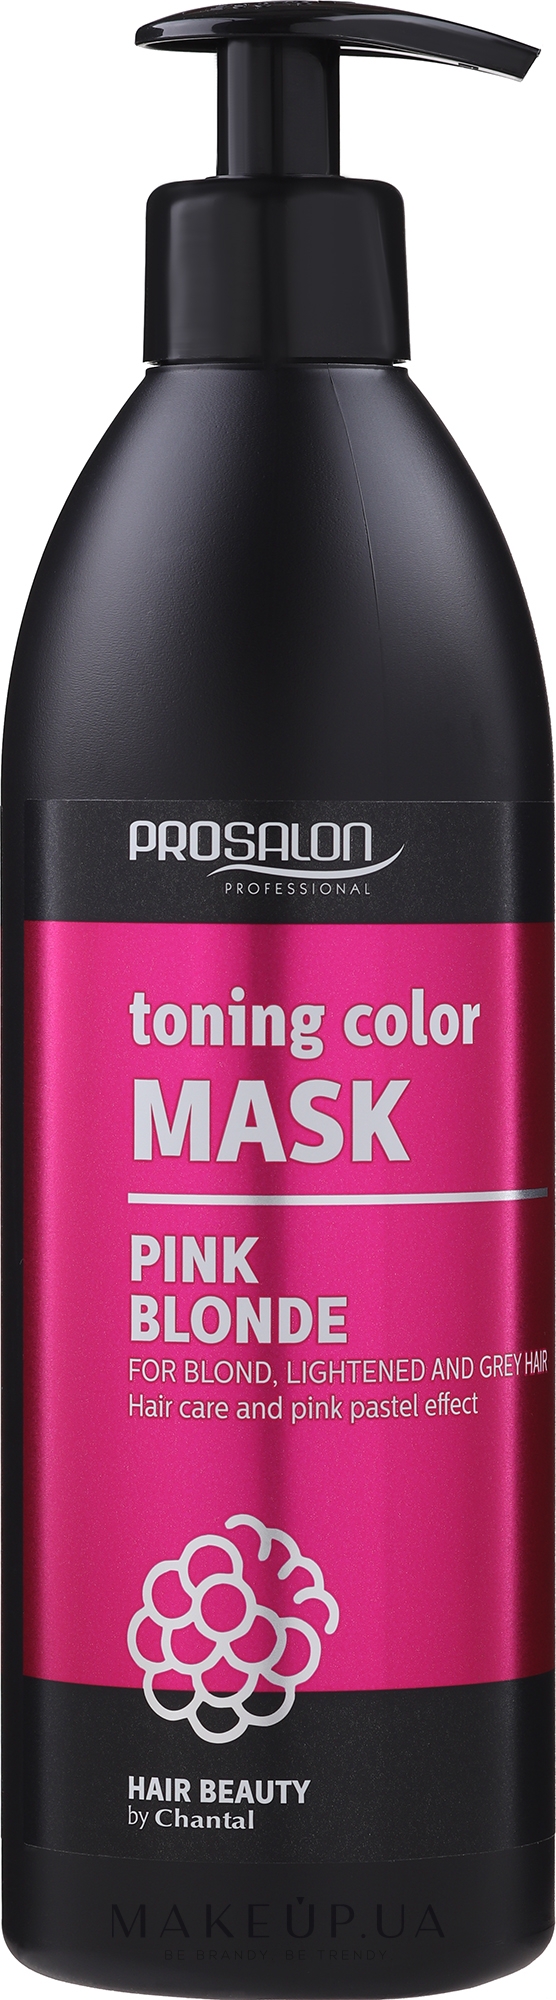 Тонирующая маска для волос - Prosalon Toning Color Mask Pink Blonde — фото 500g